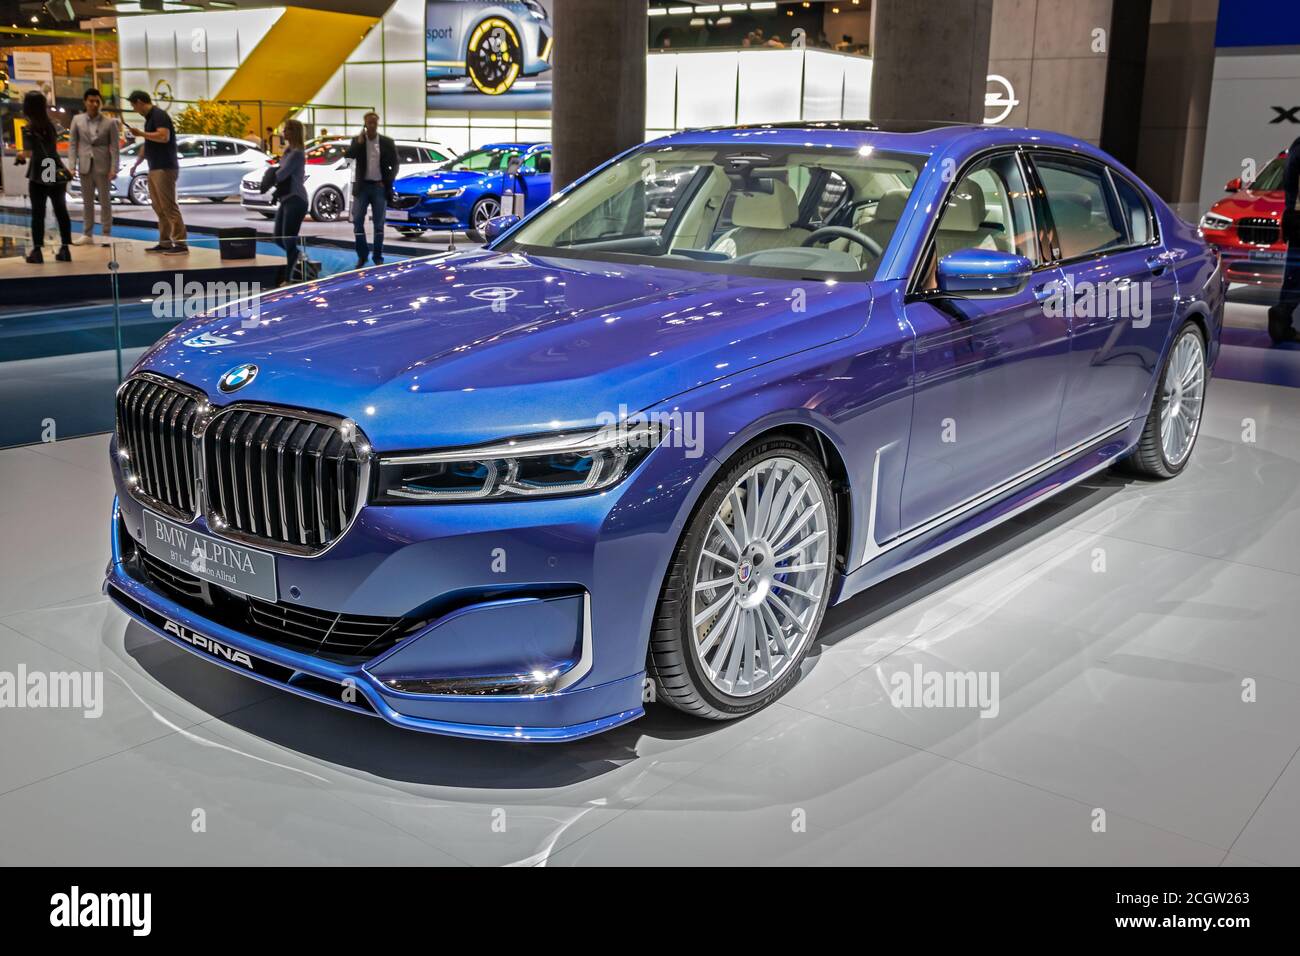 FRANCFORT, ALLEMAGNE - SEP 11, 2019 : modèle de voiture BMW Alpina B7 Langversion Allrad présenté au salon de l'automobile IAA de Francfort 2019. Banque D'Images